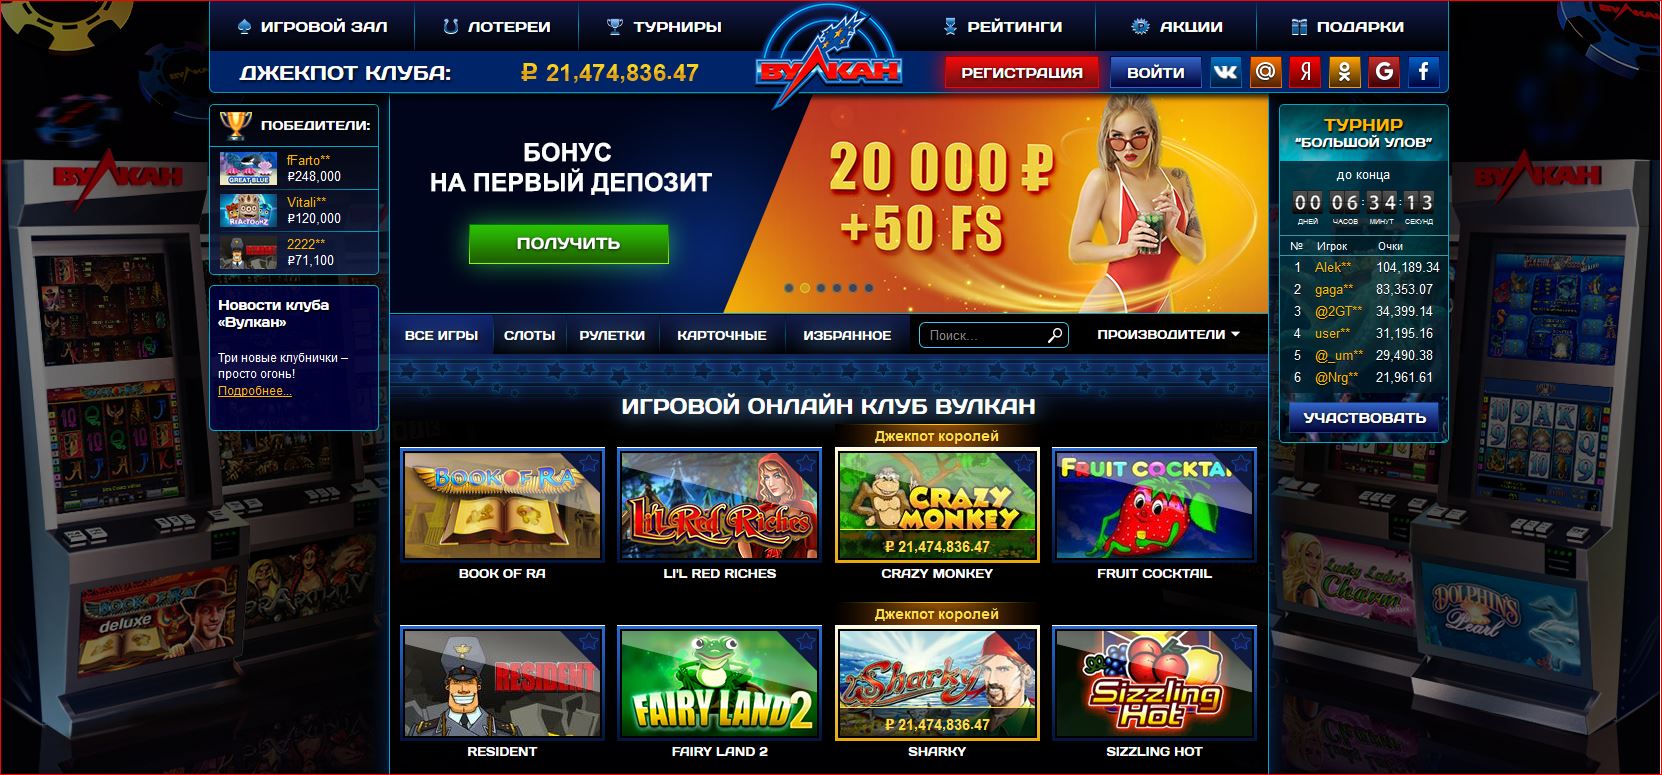 Вулкан казино официальный сайт мобильная версия играть как снять деньги с джойказино